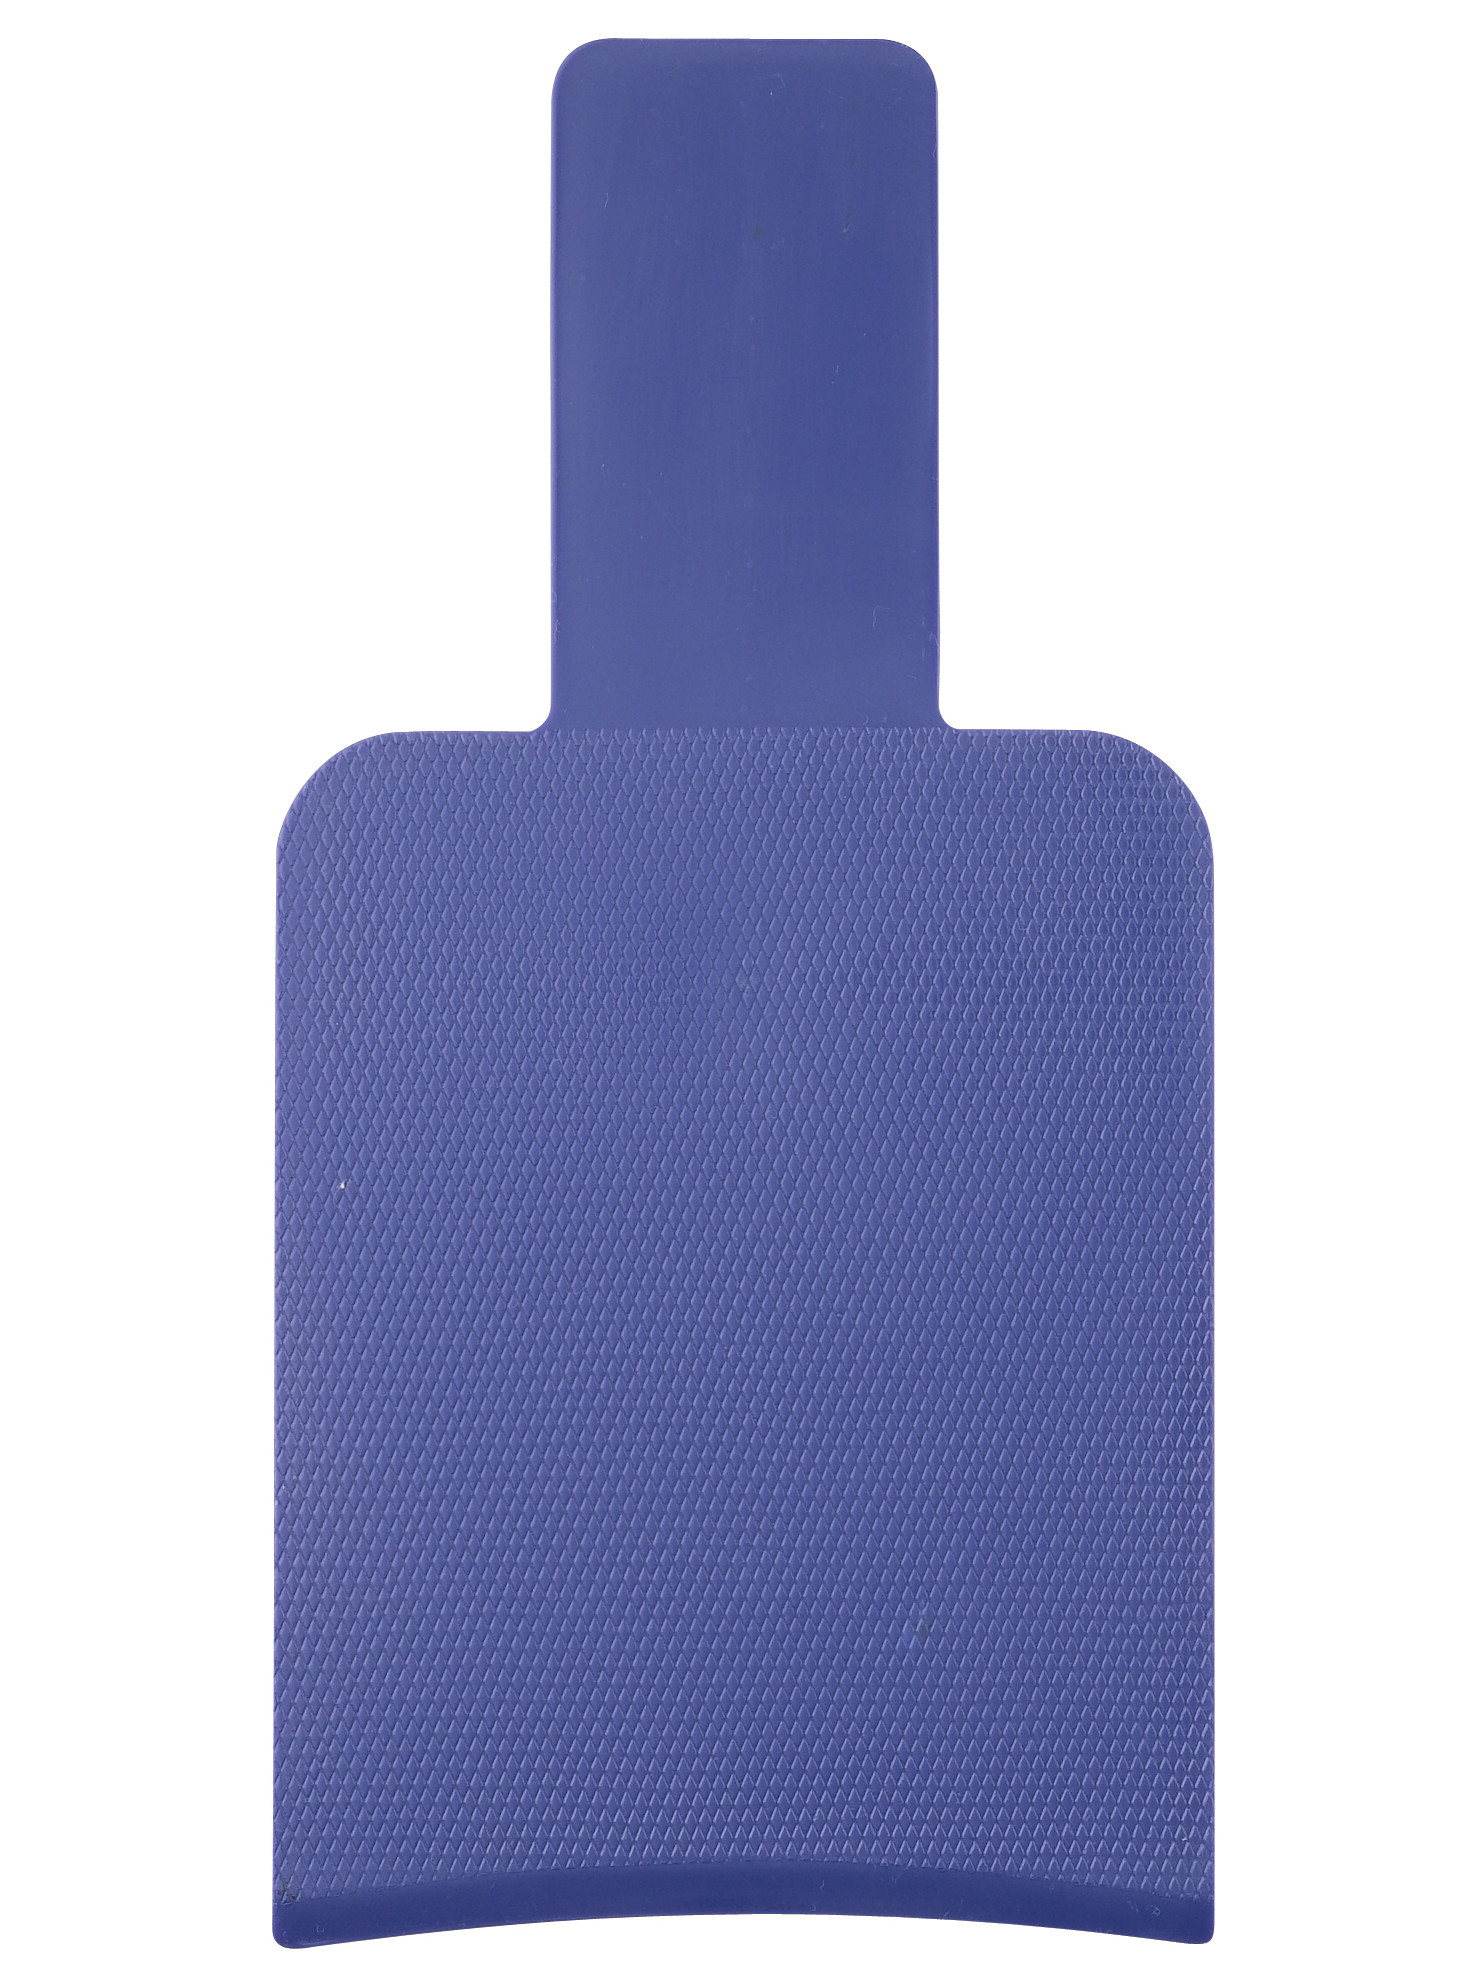 Kadeřnická lopatka/podložka na melír Sibel 105 x 210 - modrá (841870104)